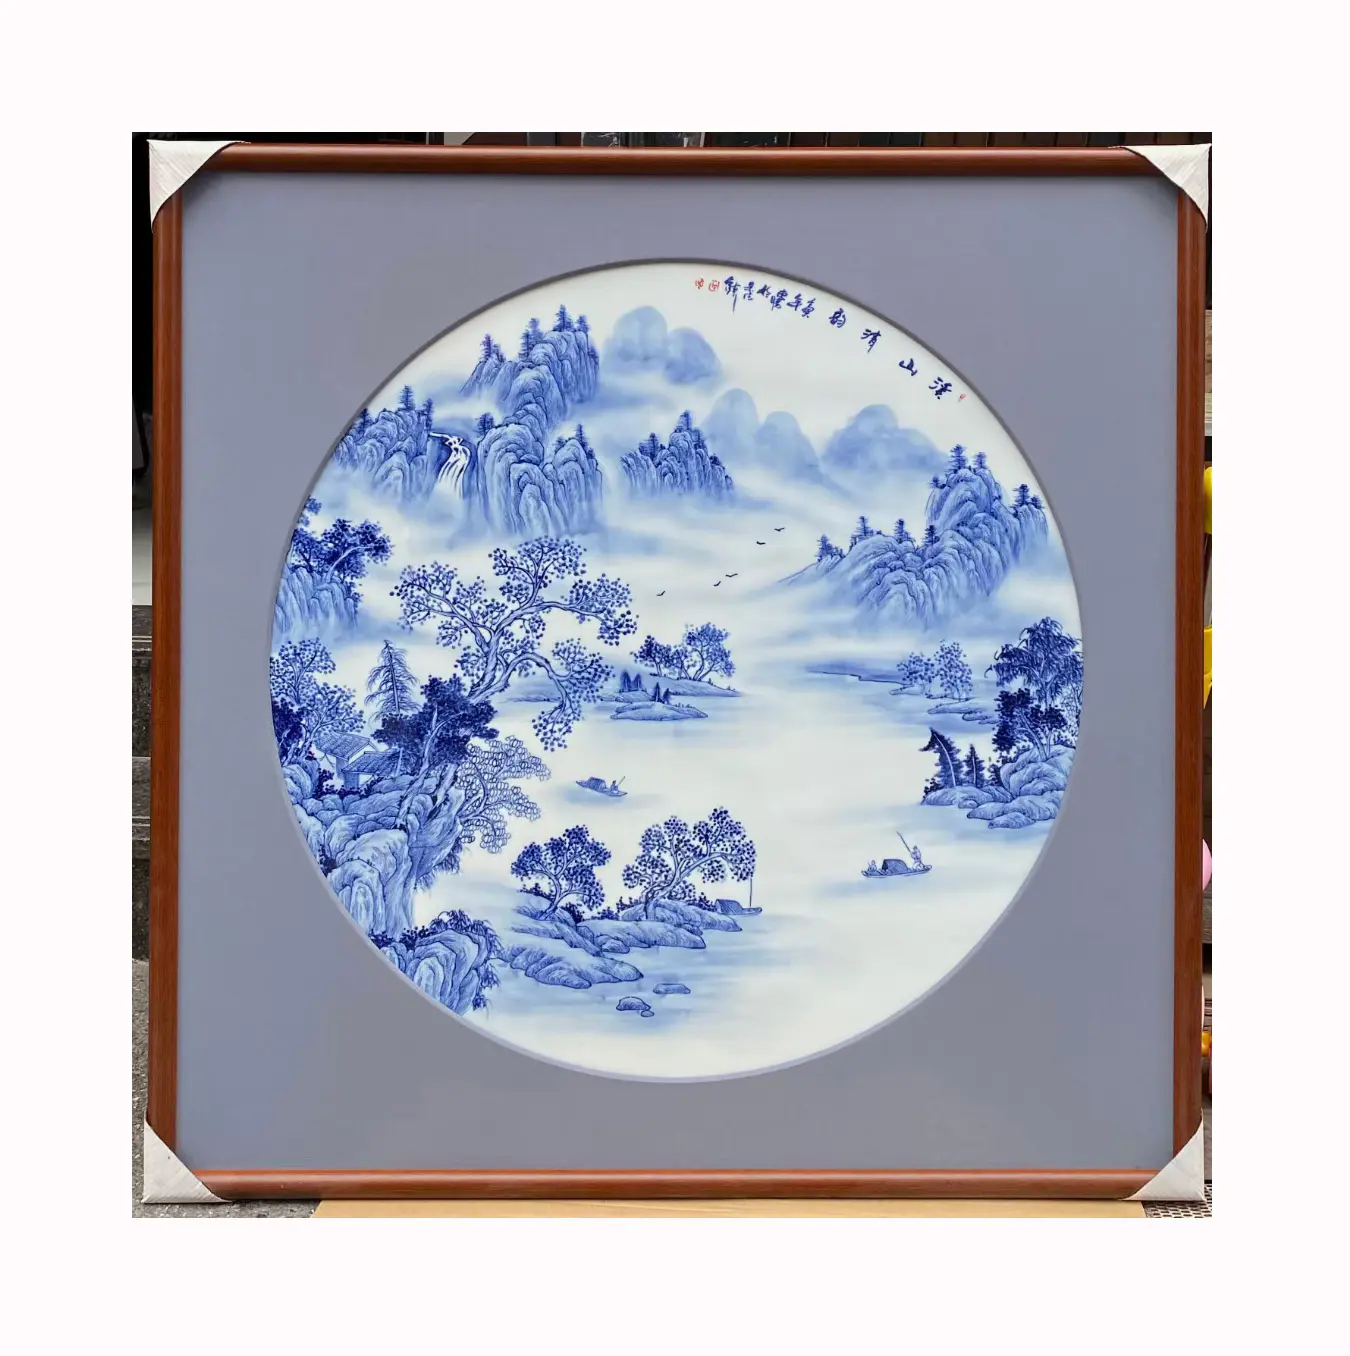 الصينية الأزرق والأبيض المشهد الفن التجريدي ديكور ديكور للمنزل ديكور